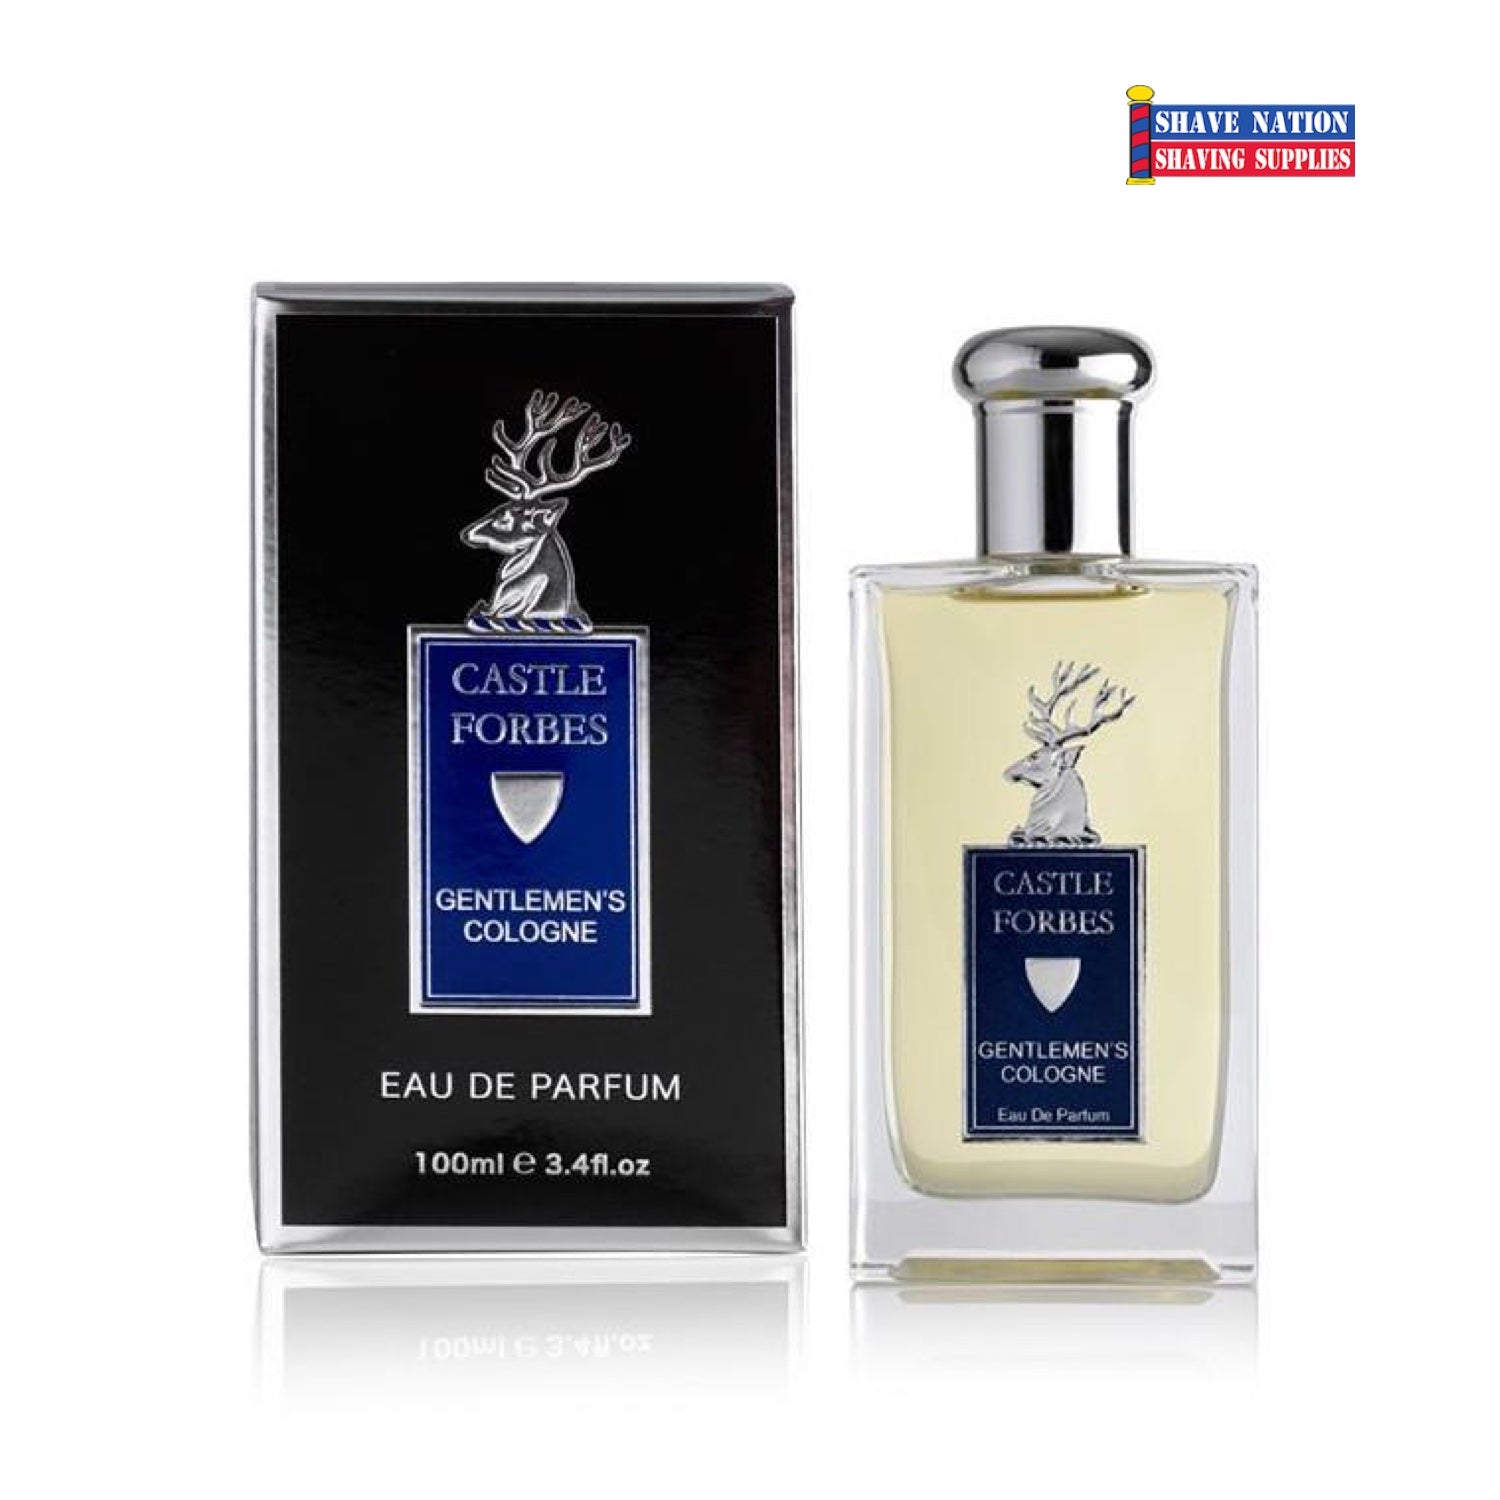 Castle Forbes GENTLEMEN'S COLOGNE Eau De Parfum Aftershave